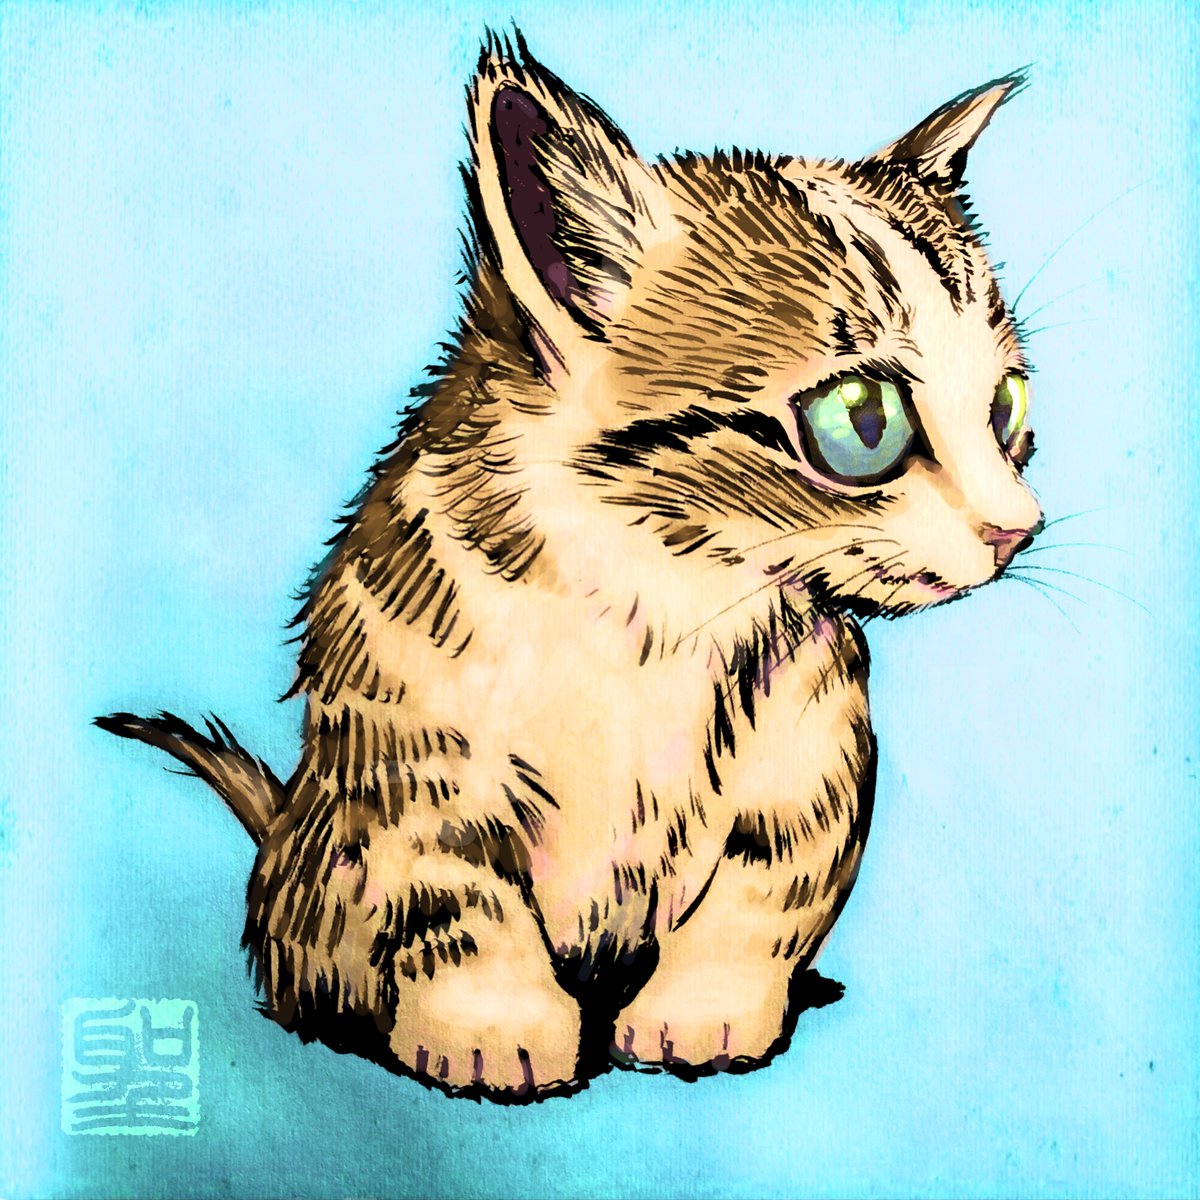 「おはこんばんちは 」|CatCuts ✴︎日々猫絵描く漫画編集者のイラスト